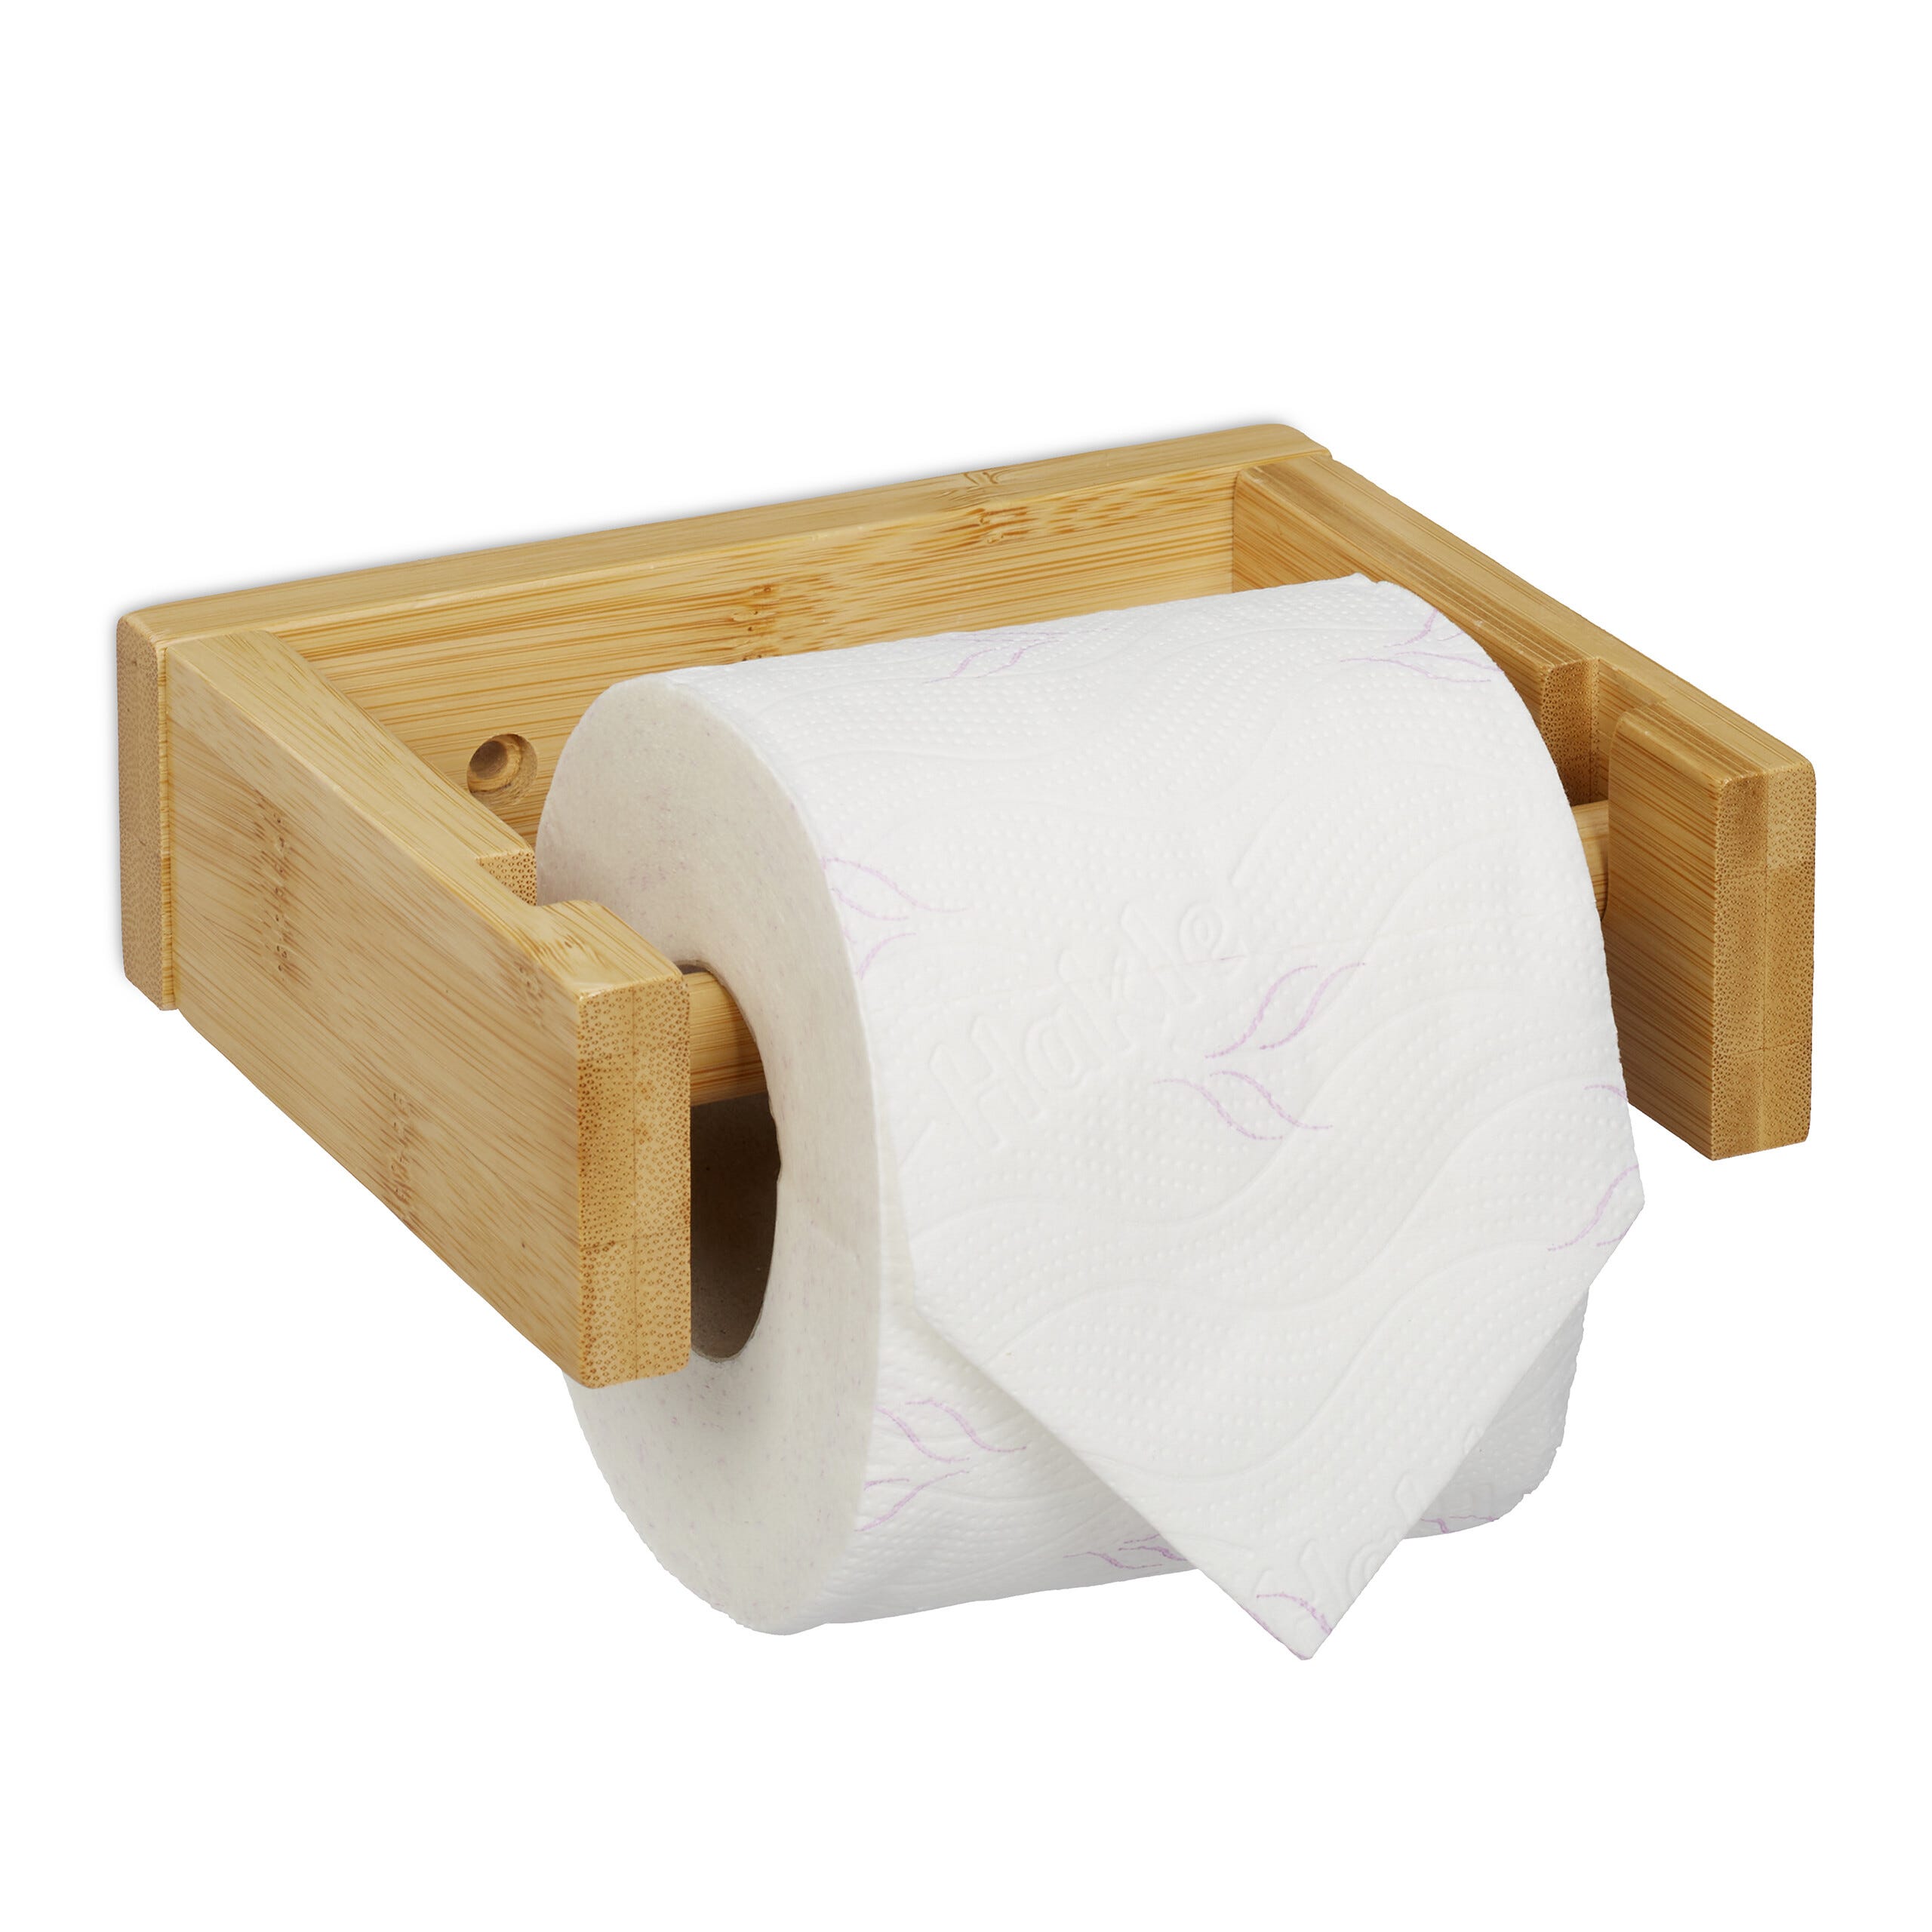 Relaxdays Support papier toilette en bambou, pour salle de bains & WC,  mural, autocollant, HxLxP: 5x16x13 cm, nature